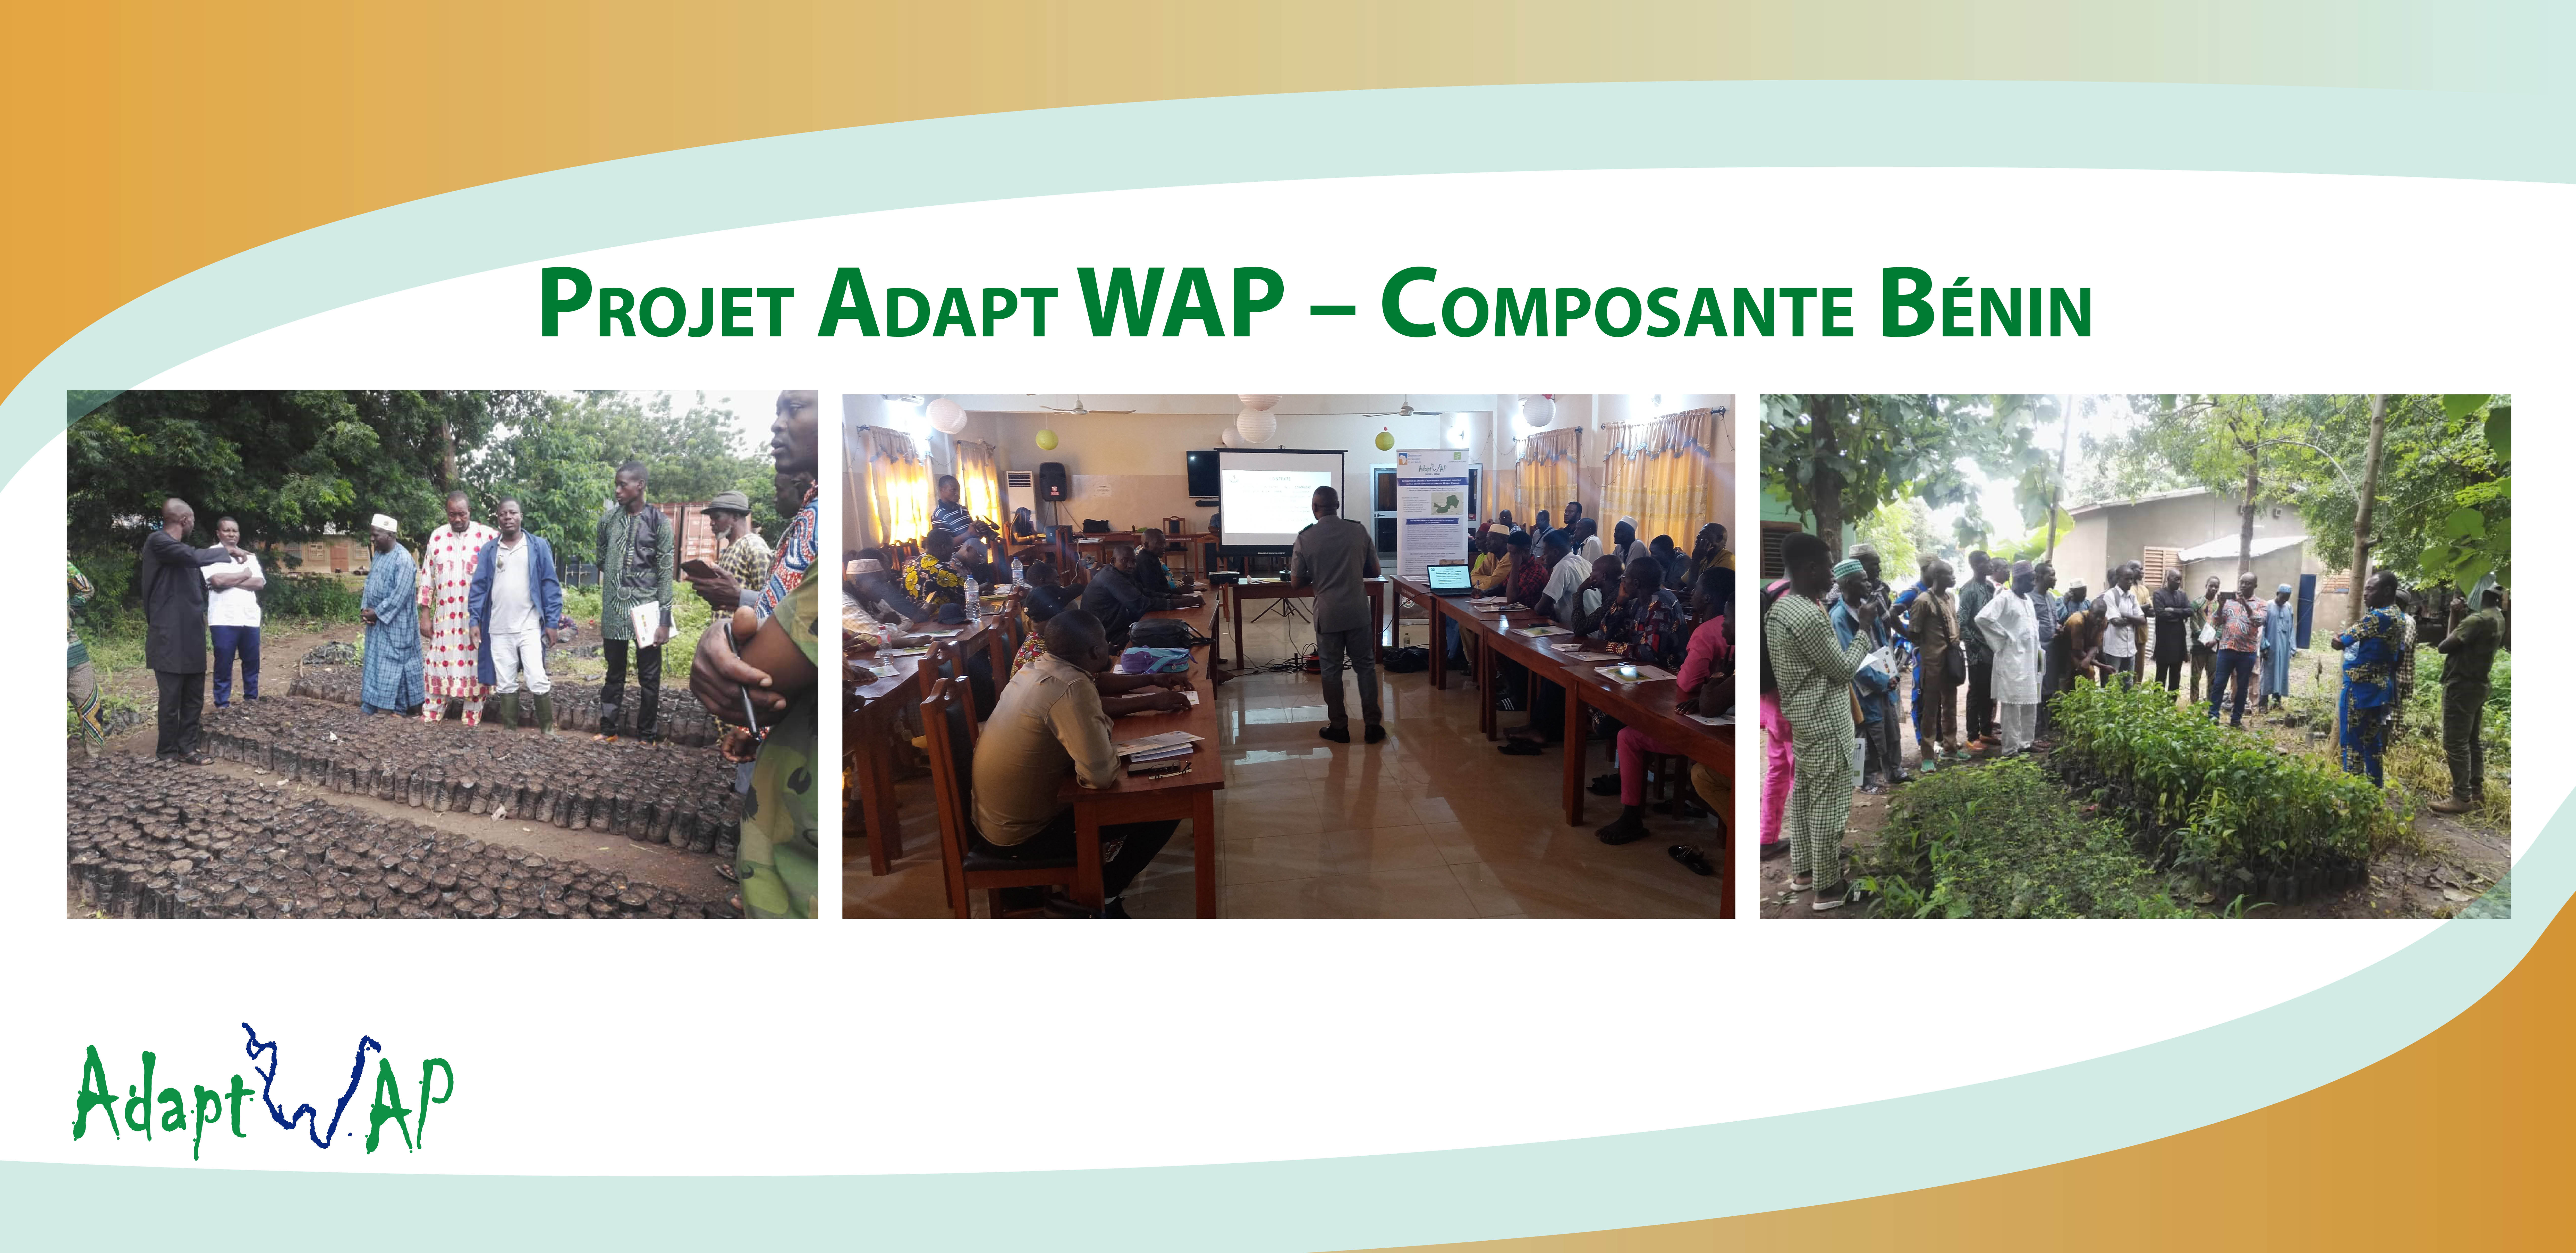  Projet AdaptWAP : la composante Bénin outille des producteurs sur les techniques d’agroforesterie et la maîtrise de la petite irrigation, septembre 2022 